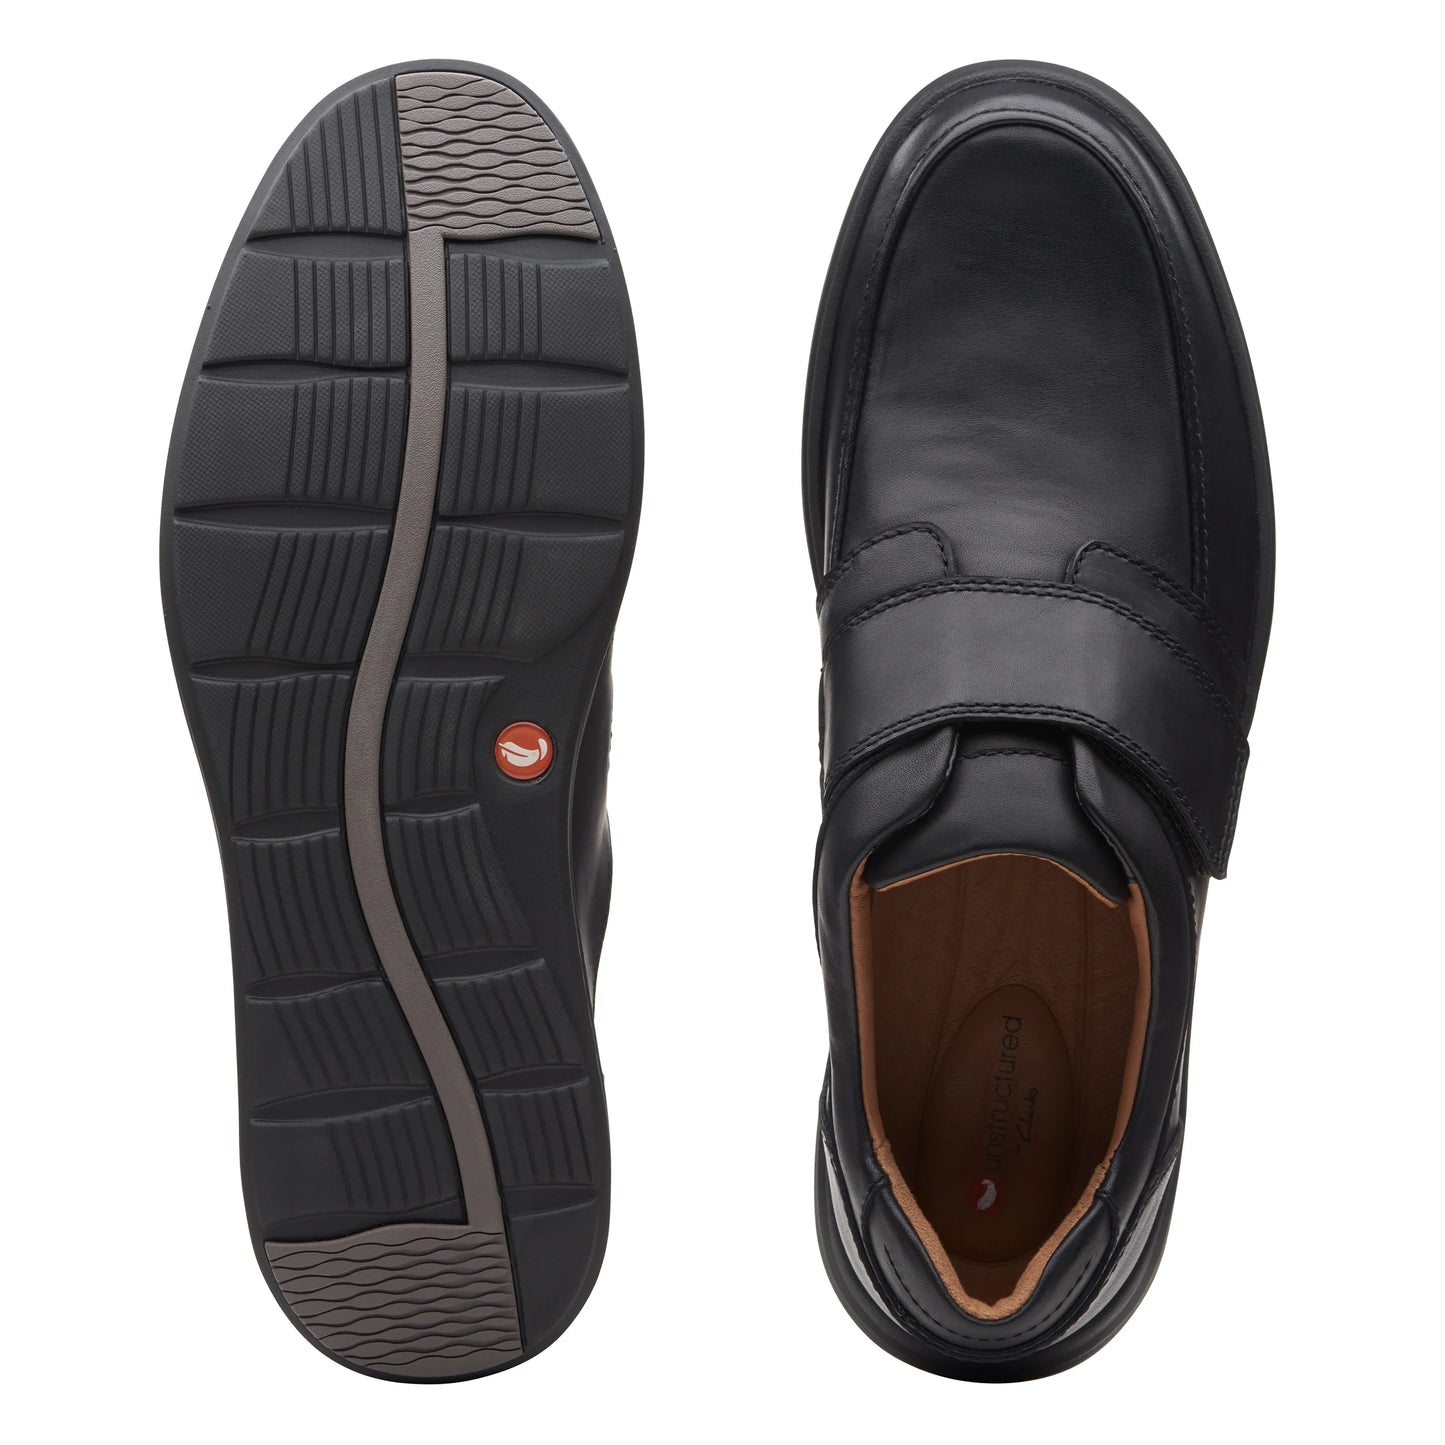 Zapatos Derby De La Marca Clarks Para Hombre Modelo Un Abode Strap Black Leather En Color Negro